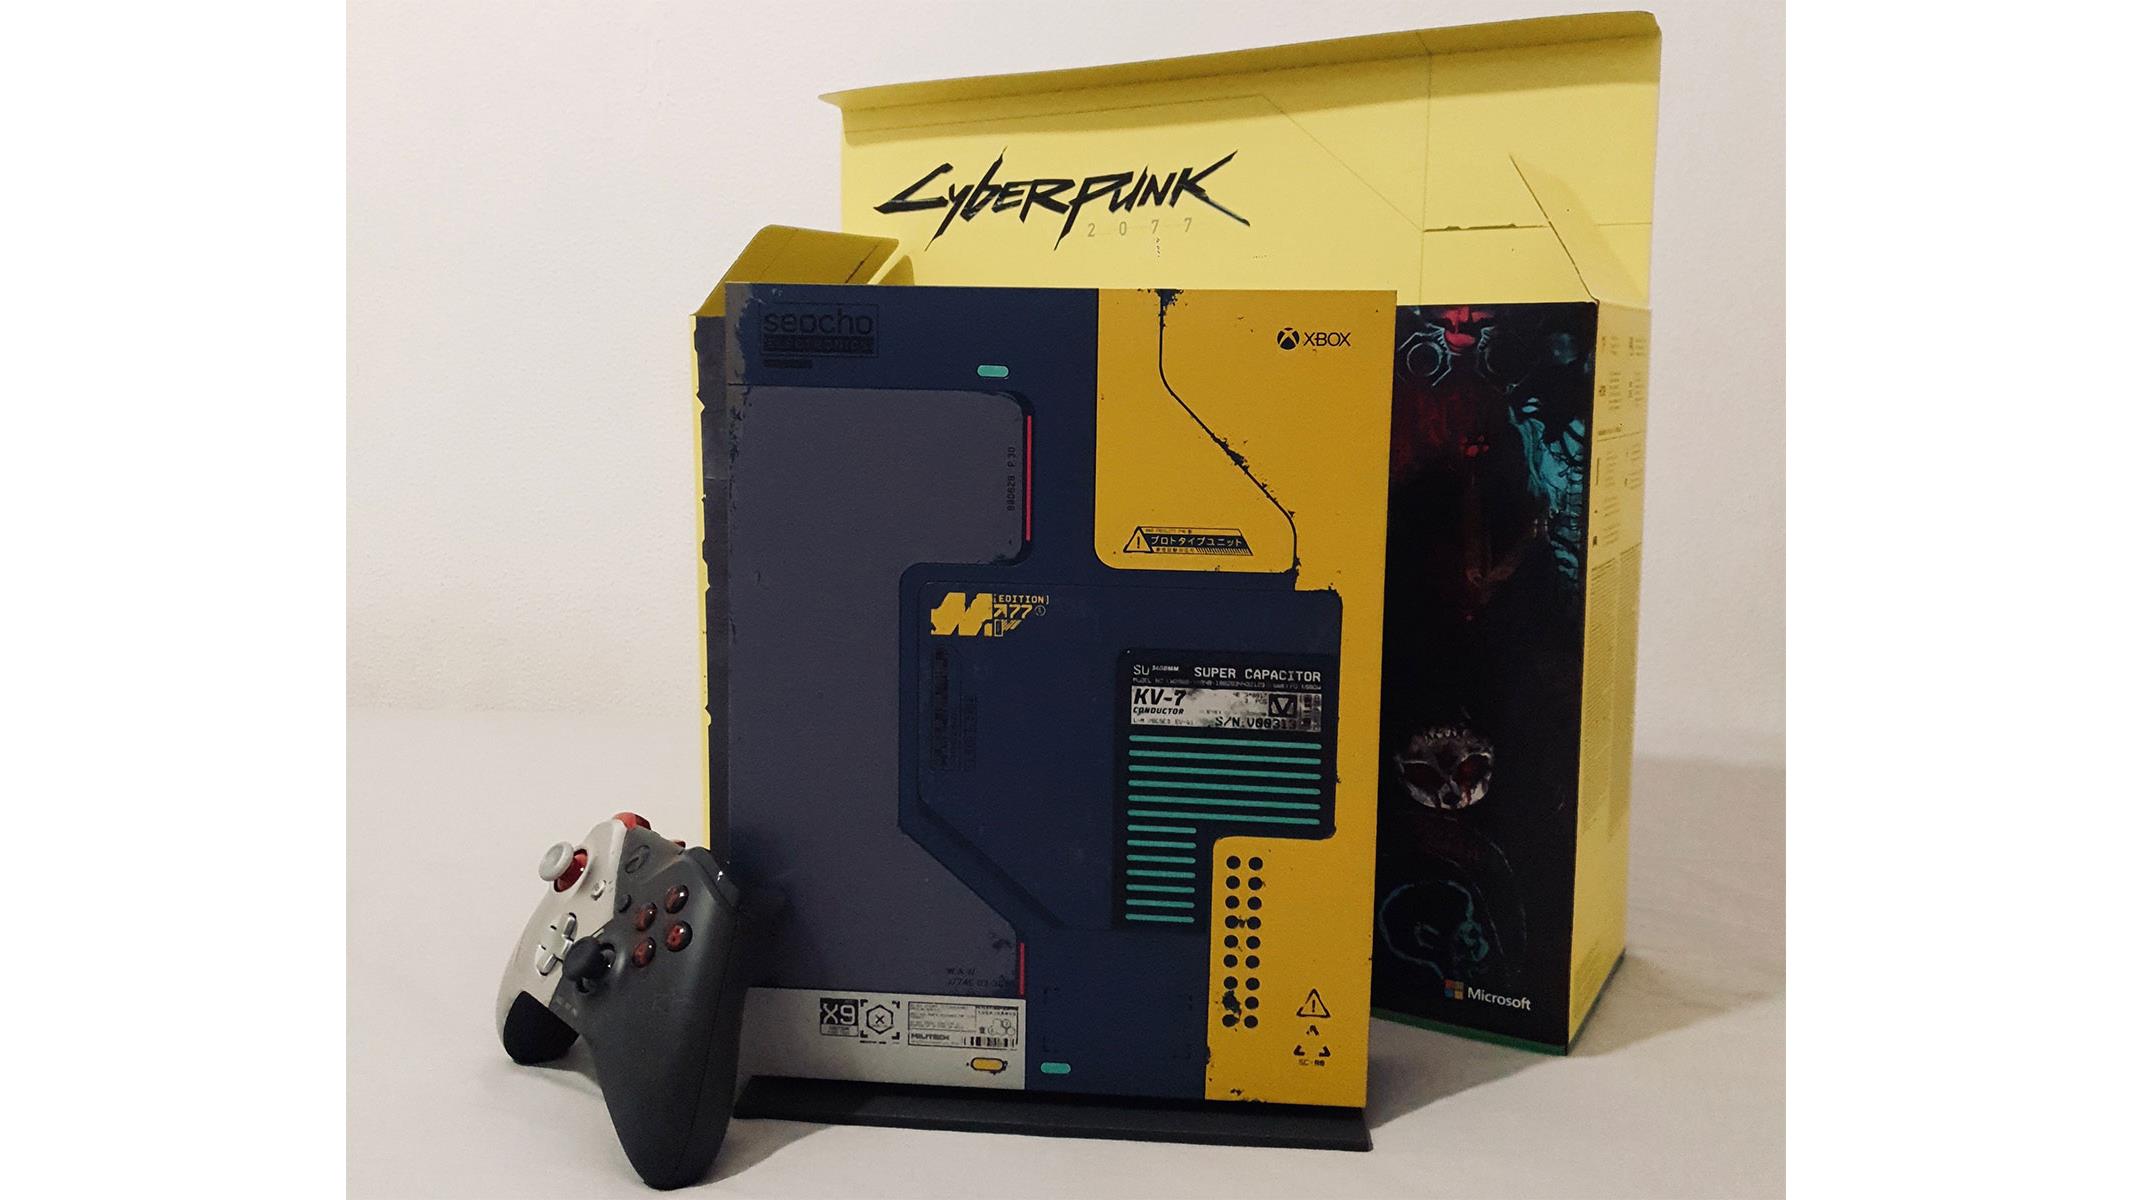 cyberpunk edition xbox one x